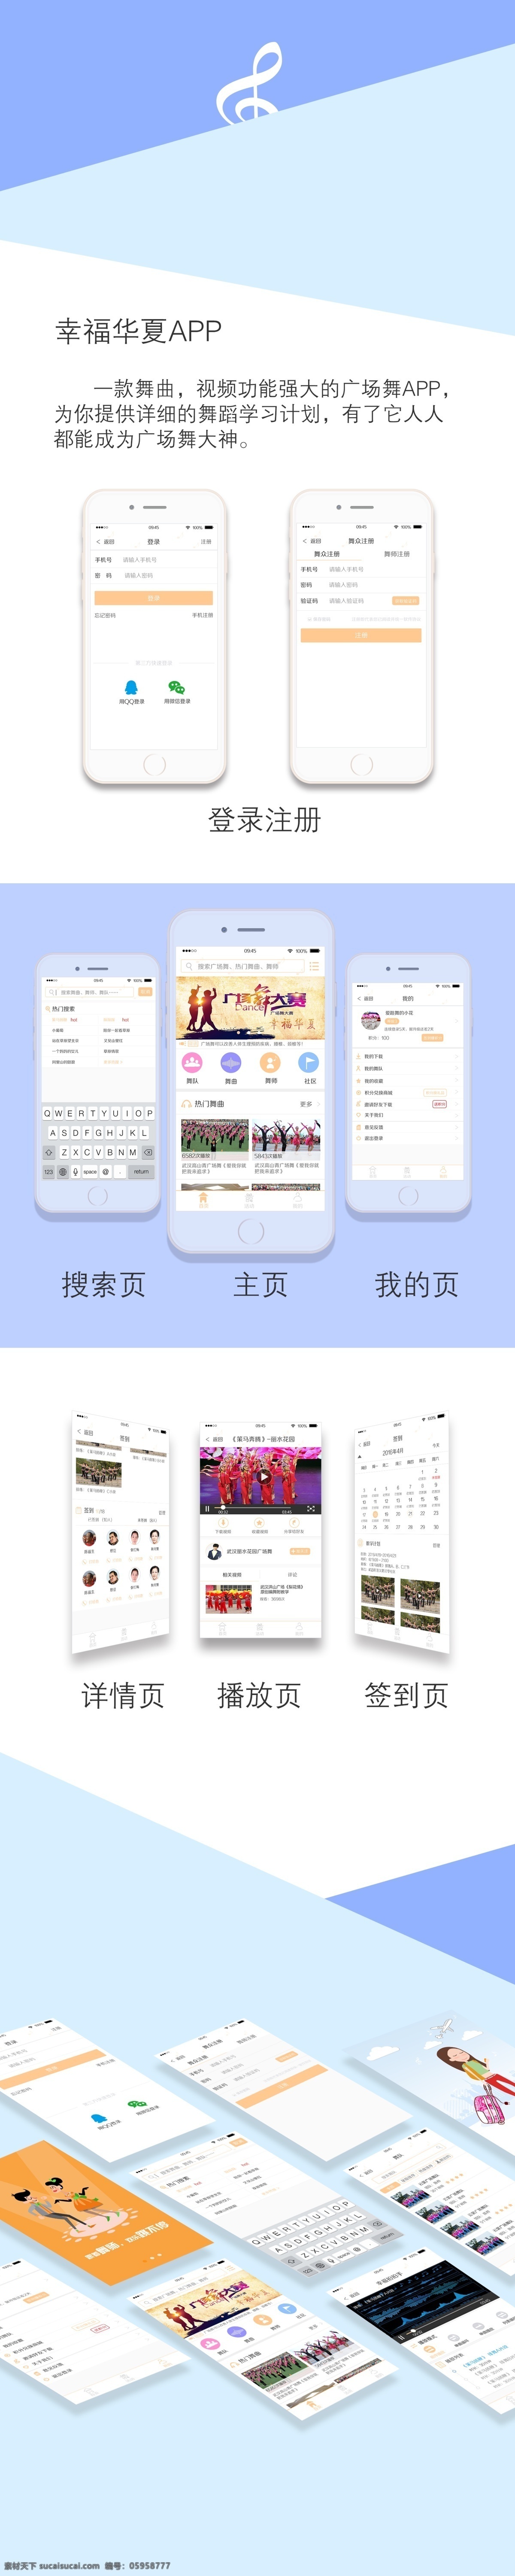 幸福 华夏 app ui界面 平面设计 app界面 ui设计 样机